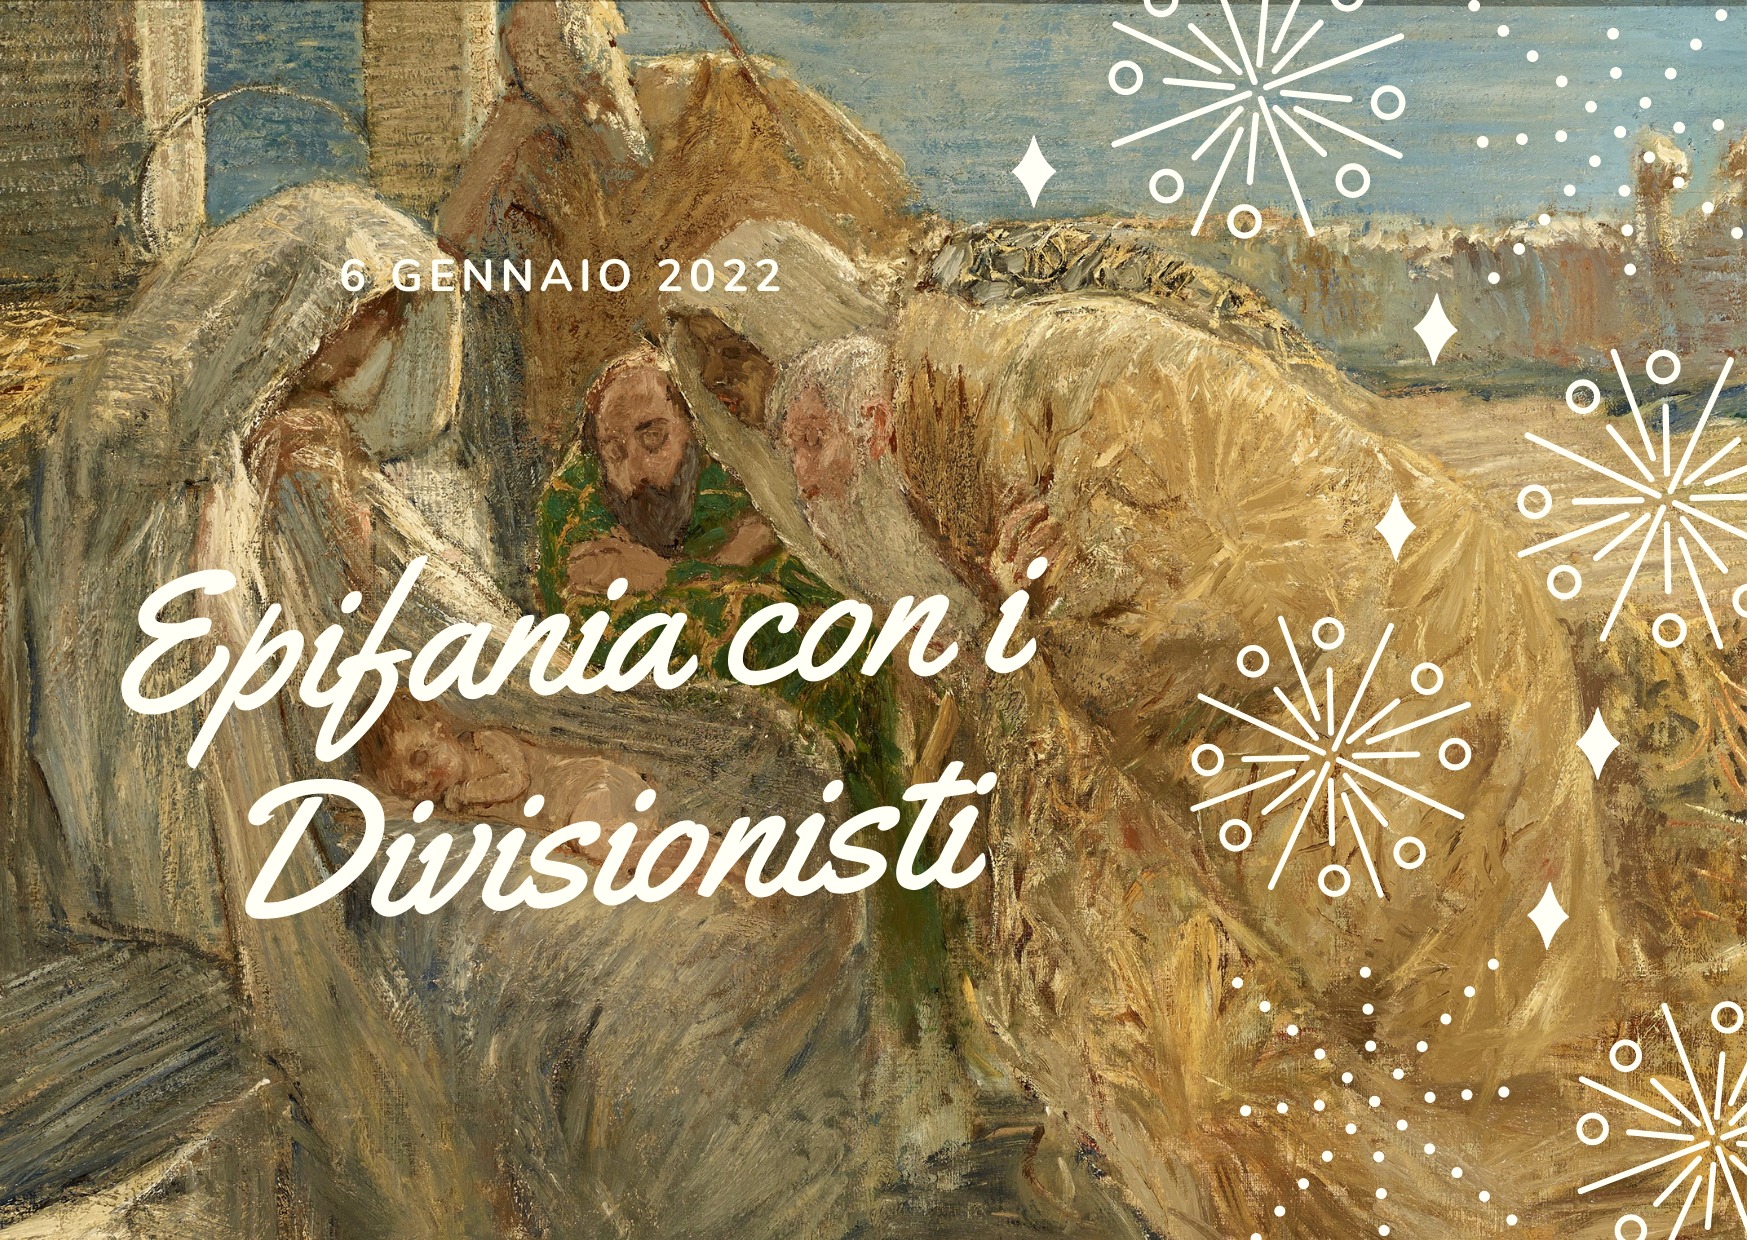 Epifania con i Divisionisti alla Pinacoteca della Fondazione C.R. Tortona